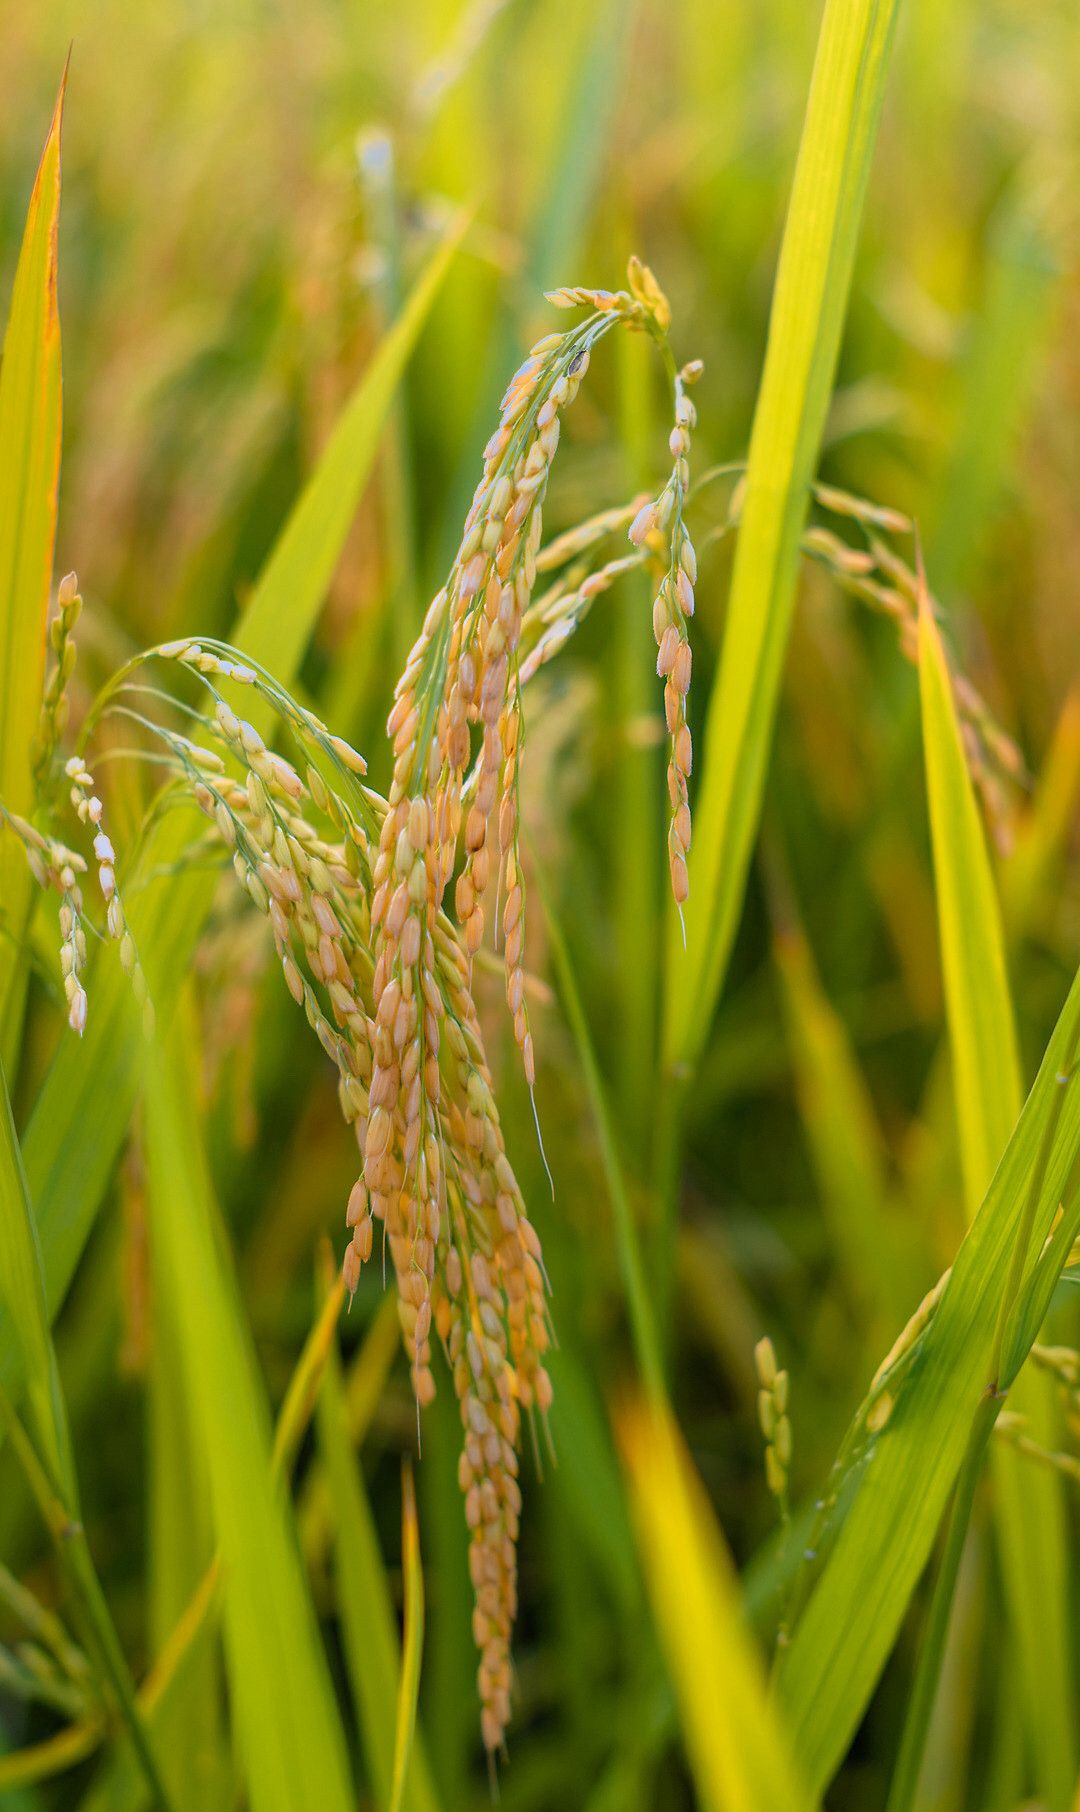 1 / 5 水稻成熟了,金黄金黄的稻穗在微风中随风起舞让人陶醉其中